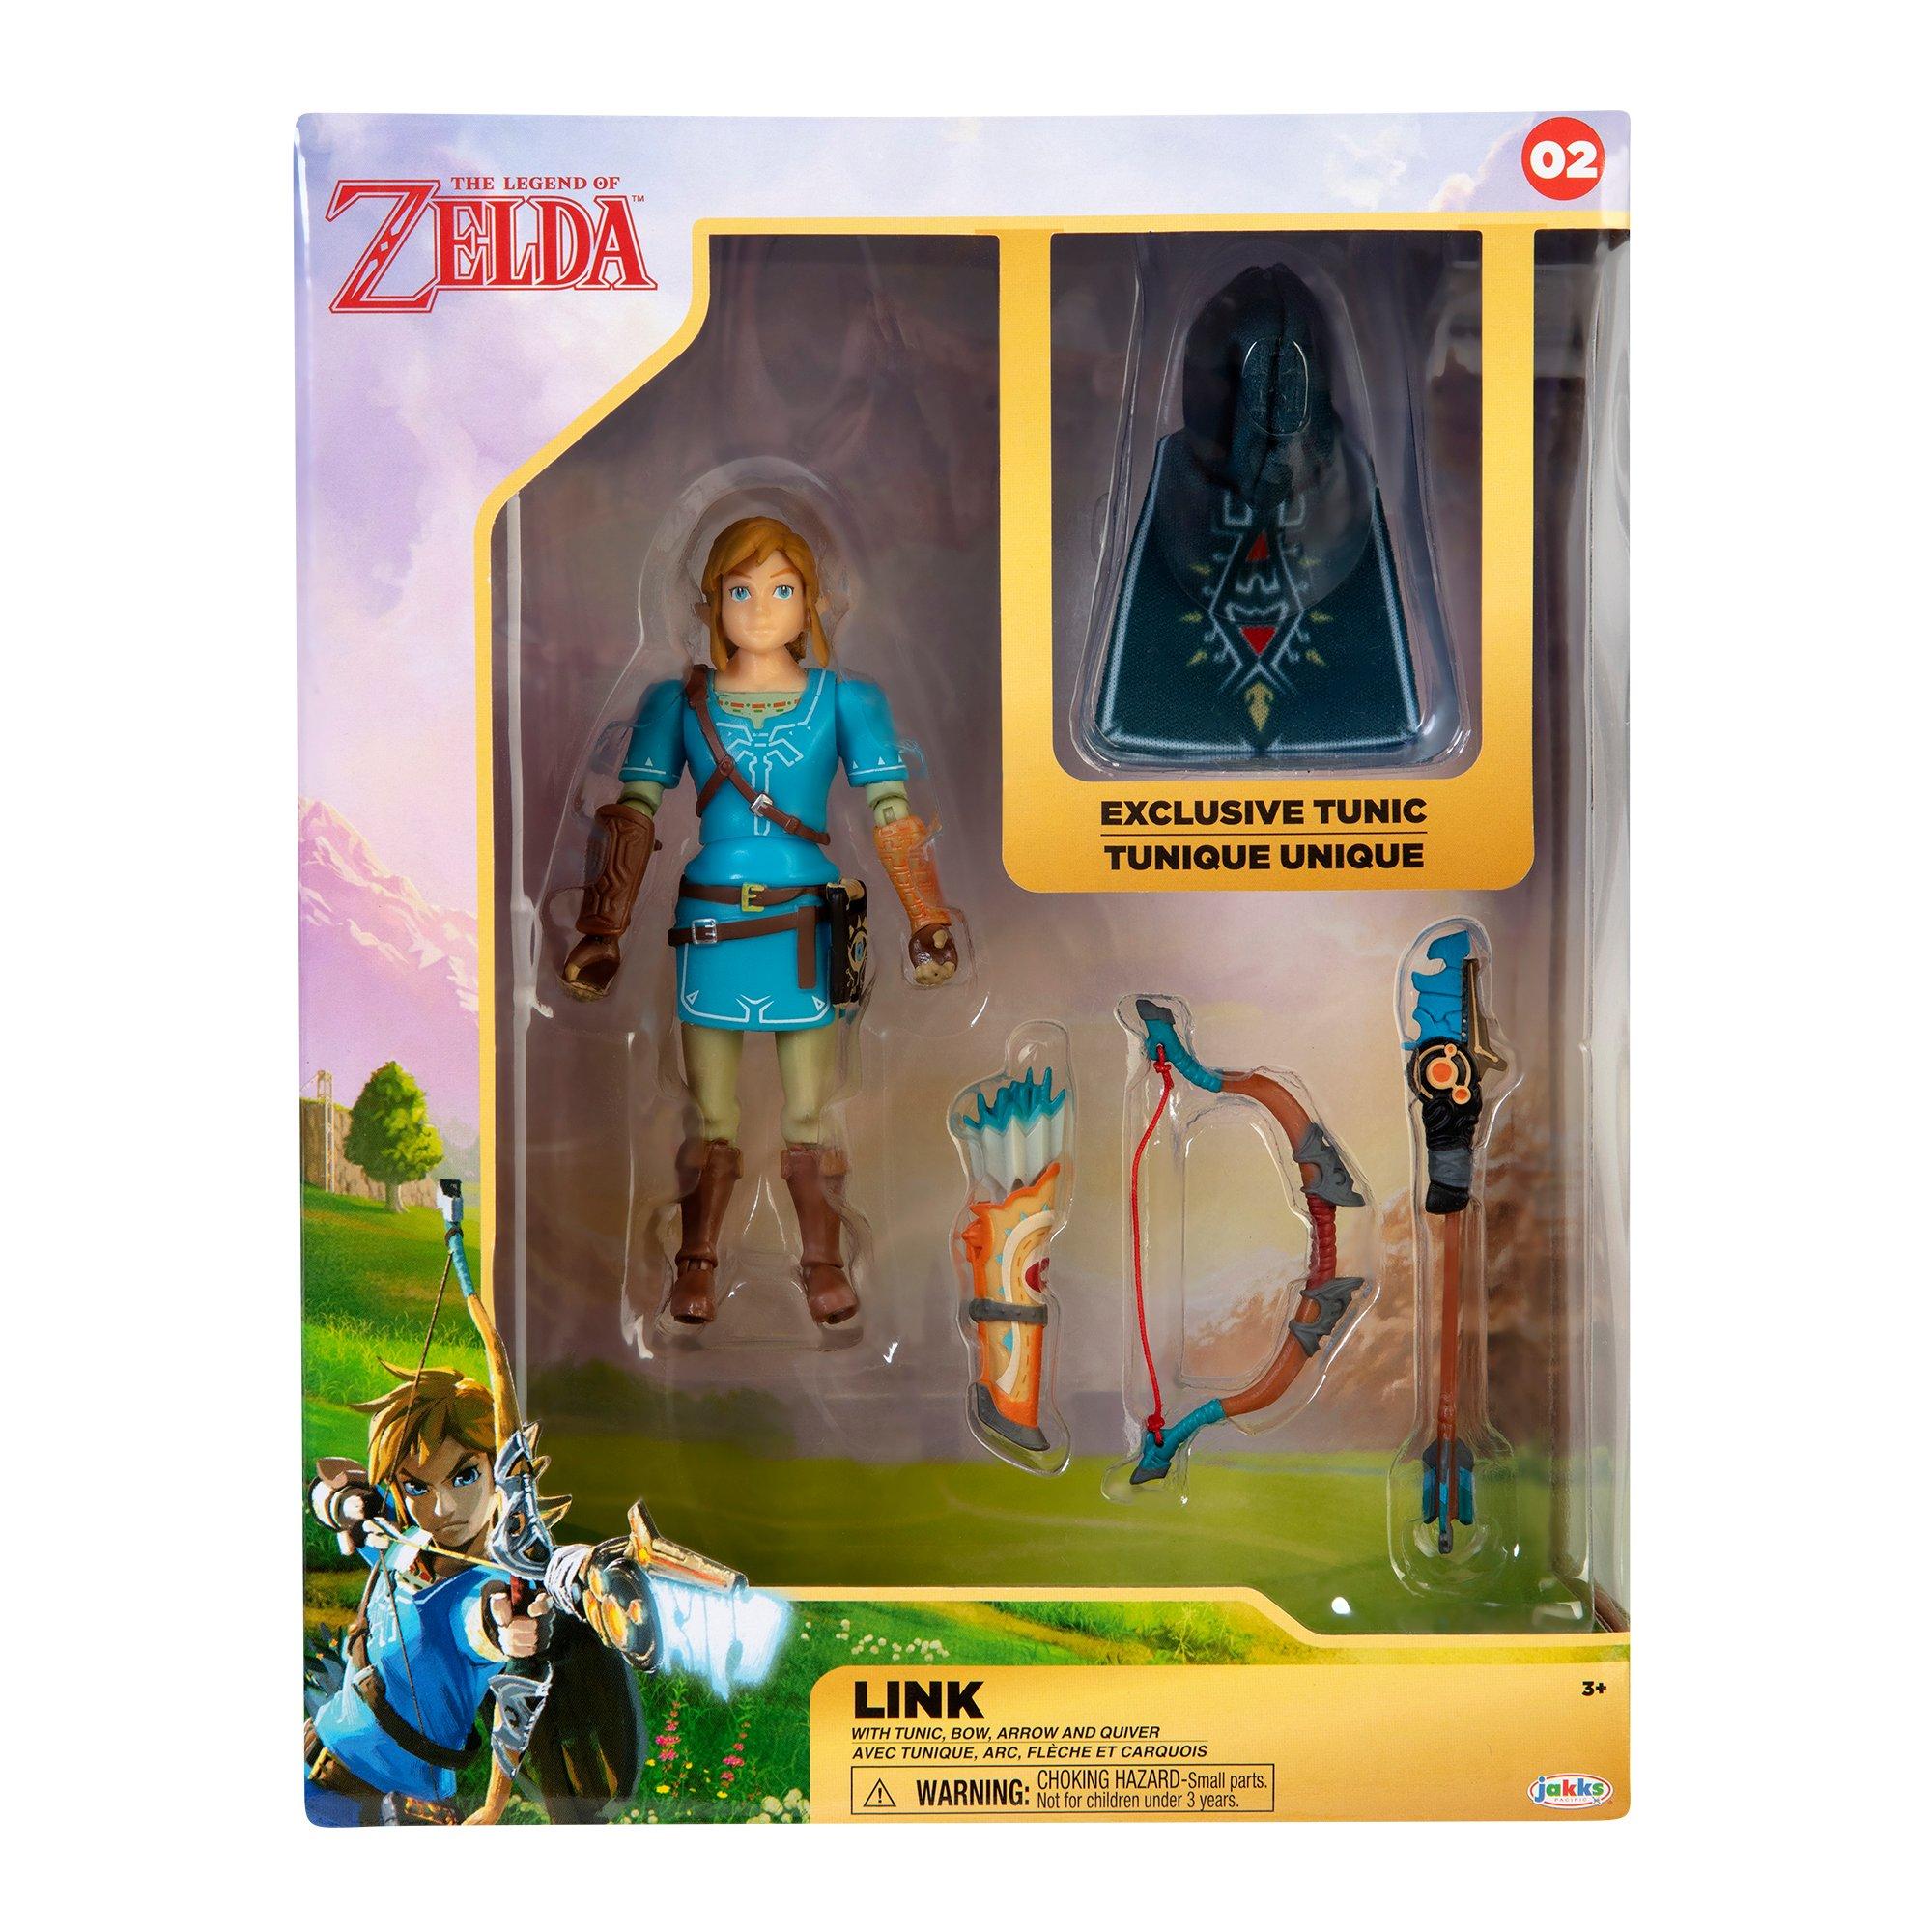 Botw Link Legendofzelda Zelda Lozbotw - Link The Legend Of Zelda